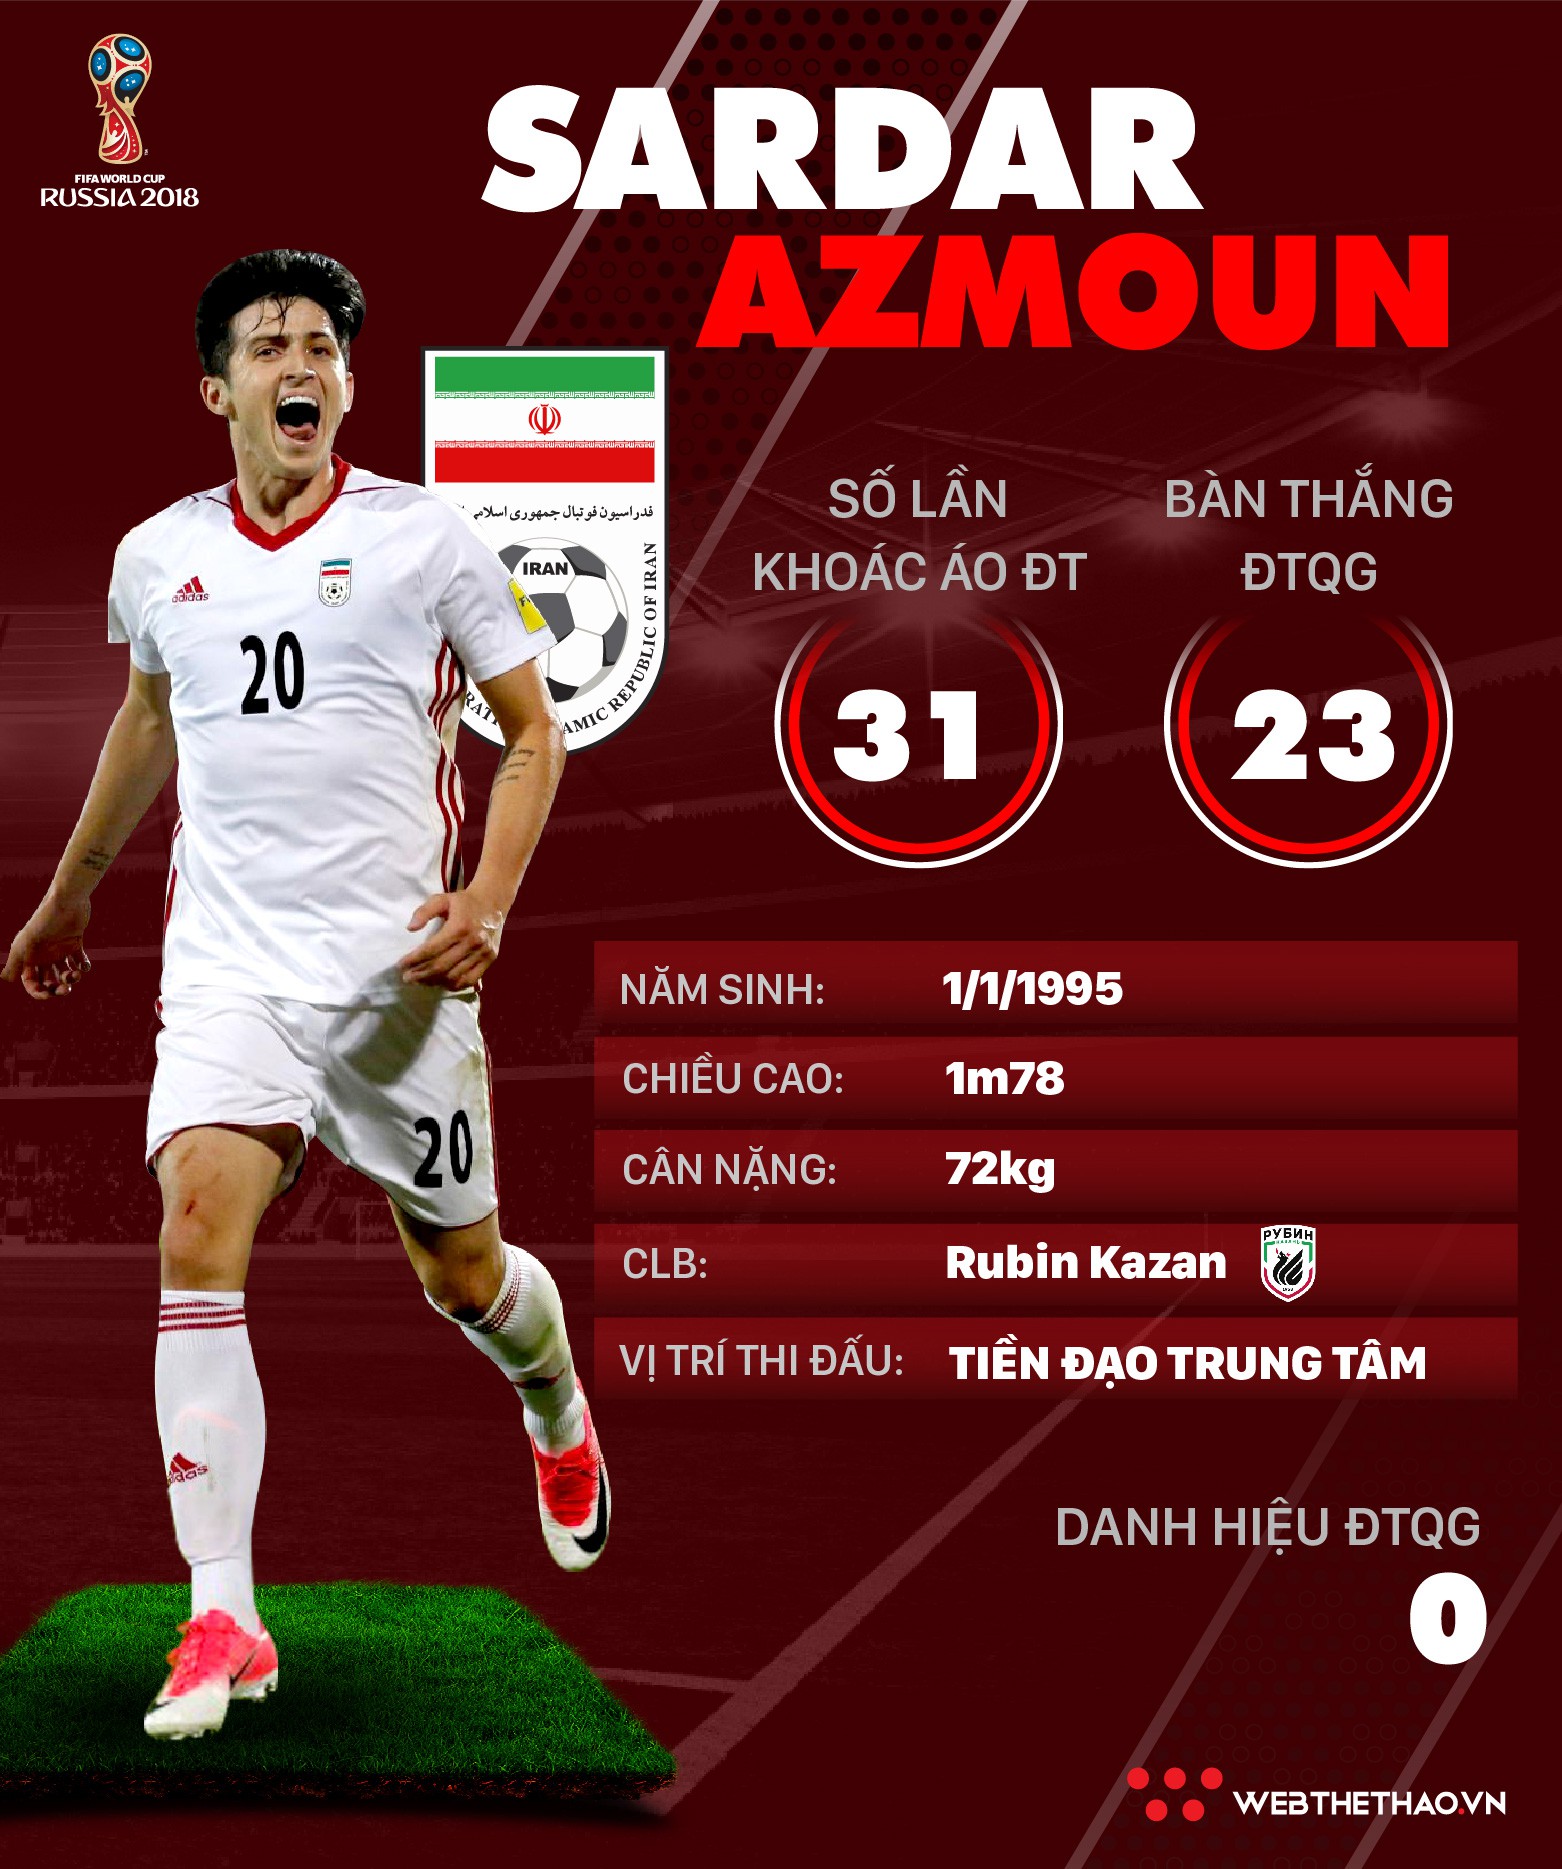 Thông tin cầu thủ Sardar Azmoun của ĐT Iran dự World Cup 2018 - Ảnh 1.